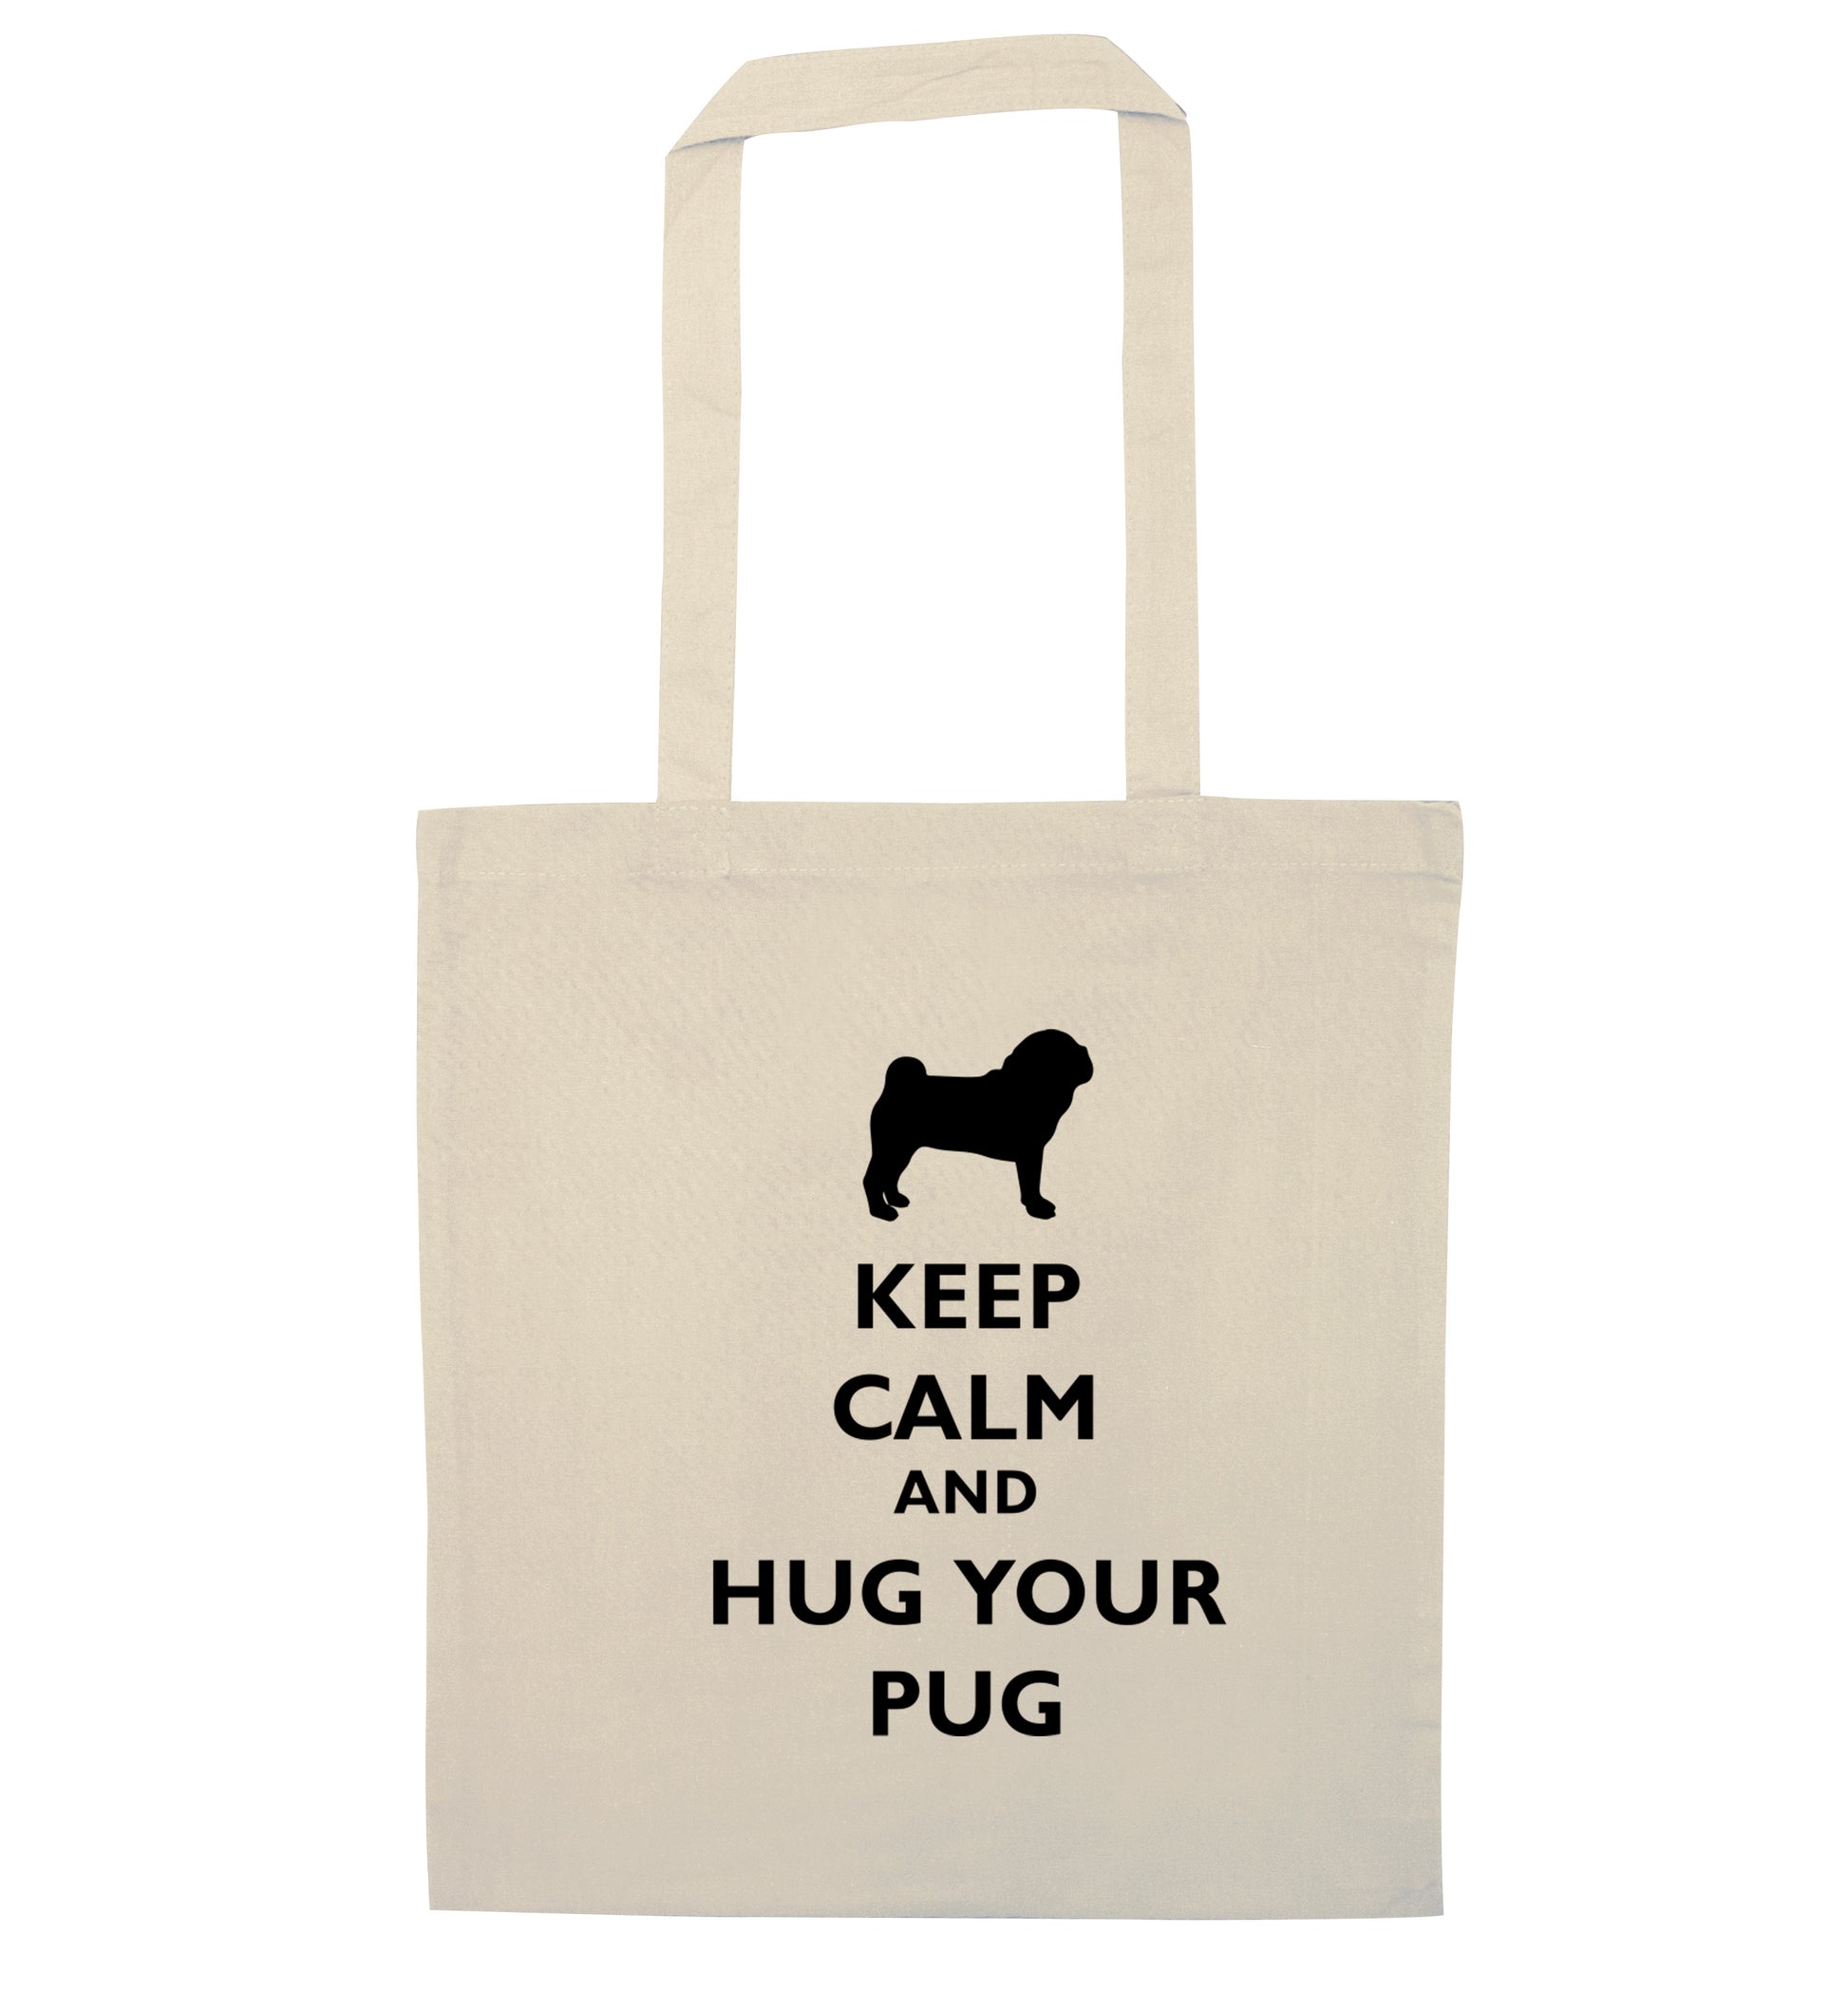 Keep calm and hug your pug natural tote bag